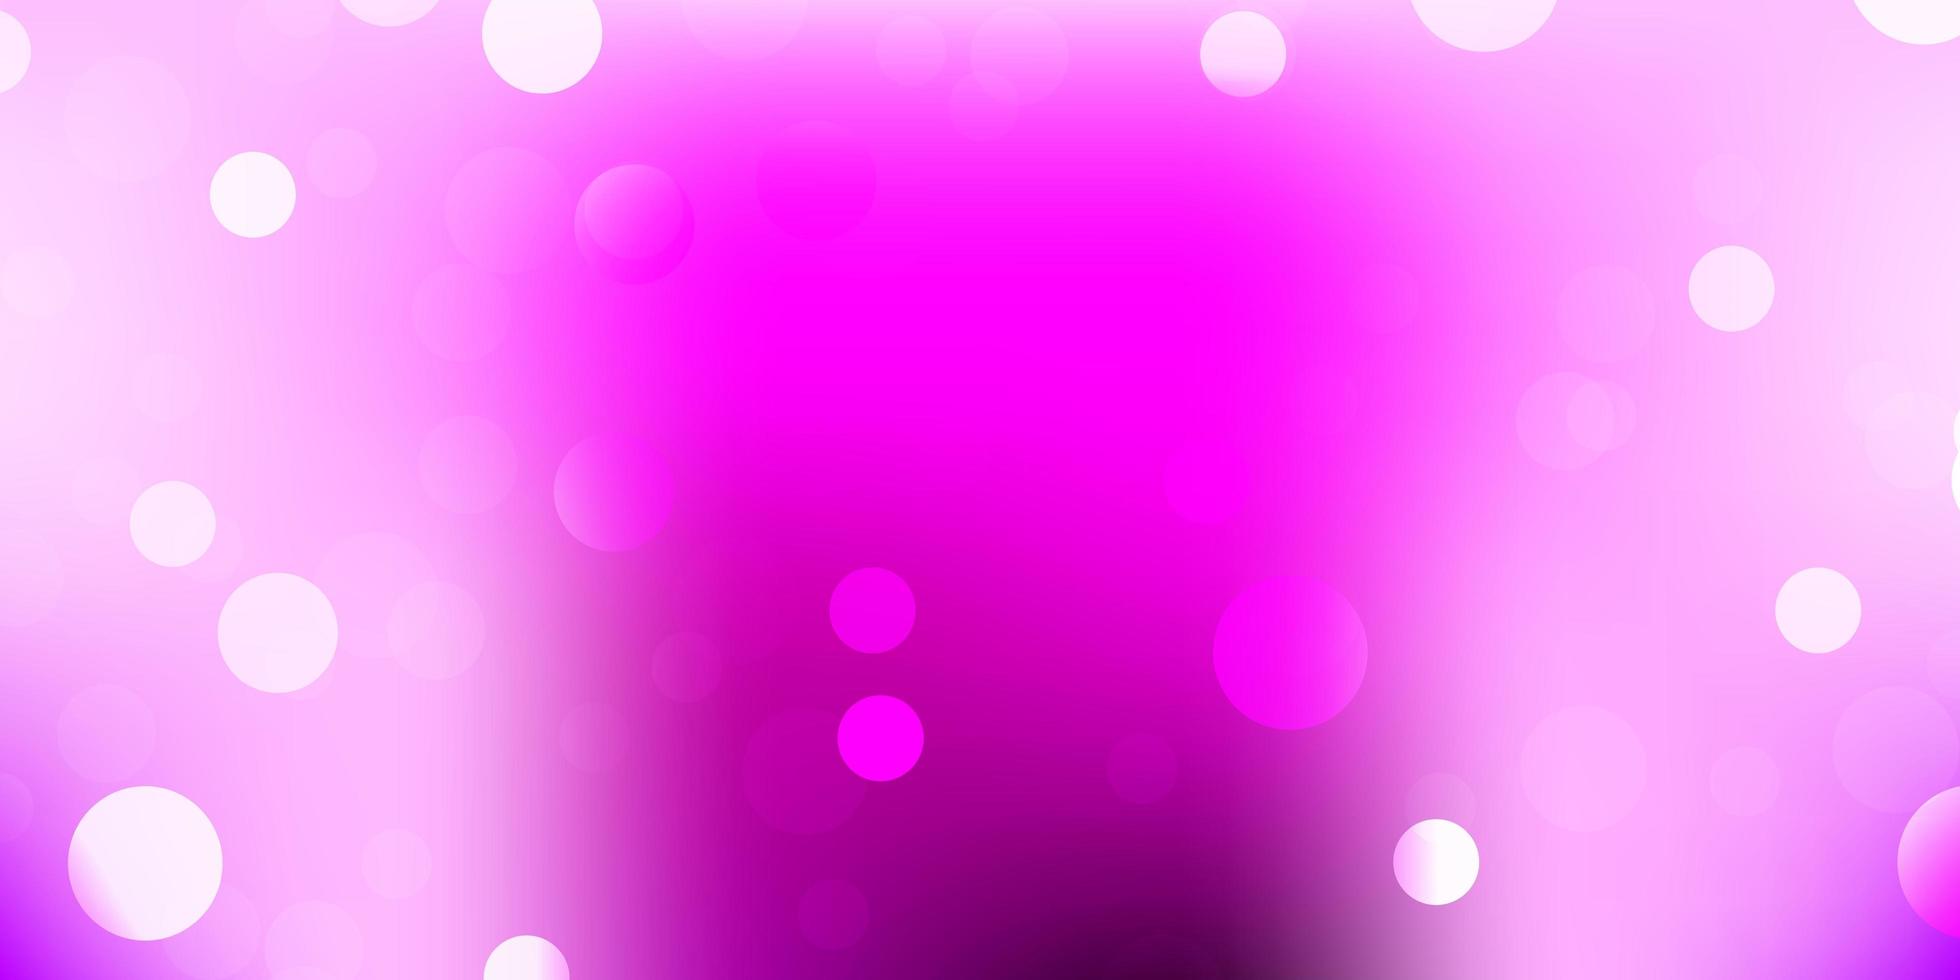 sfondo vettoriale viola chiaro, rosa con forme caotiche.